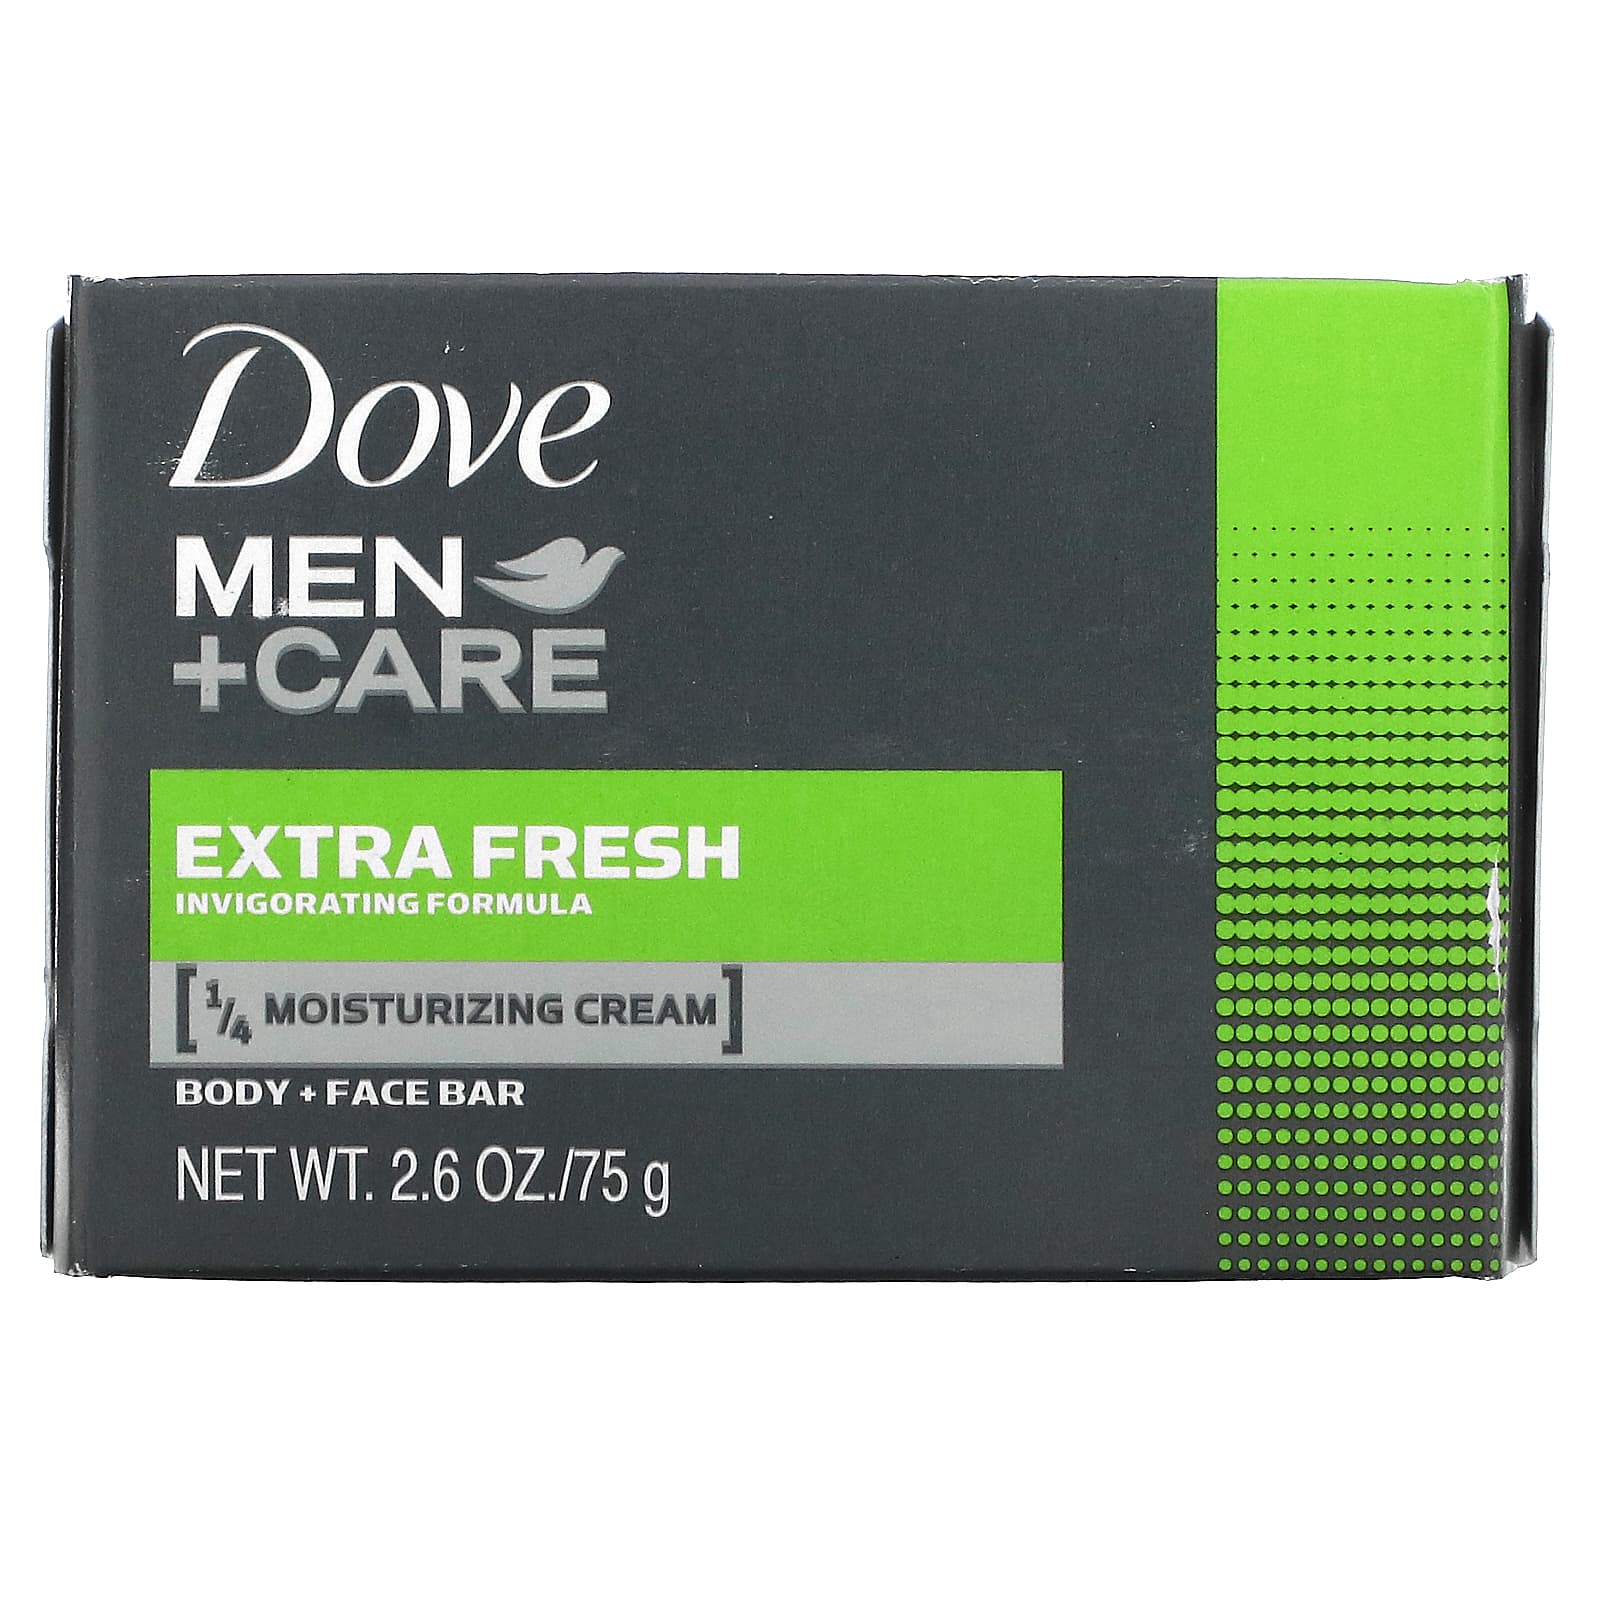 Мыло Dove для тела и лица, свежесть, 75 г dove men care мыло для тела и лица свежесть 75 г 2 6 унции